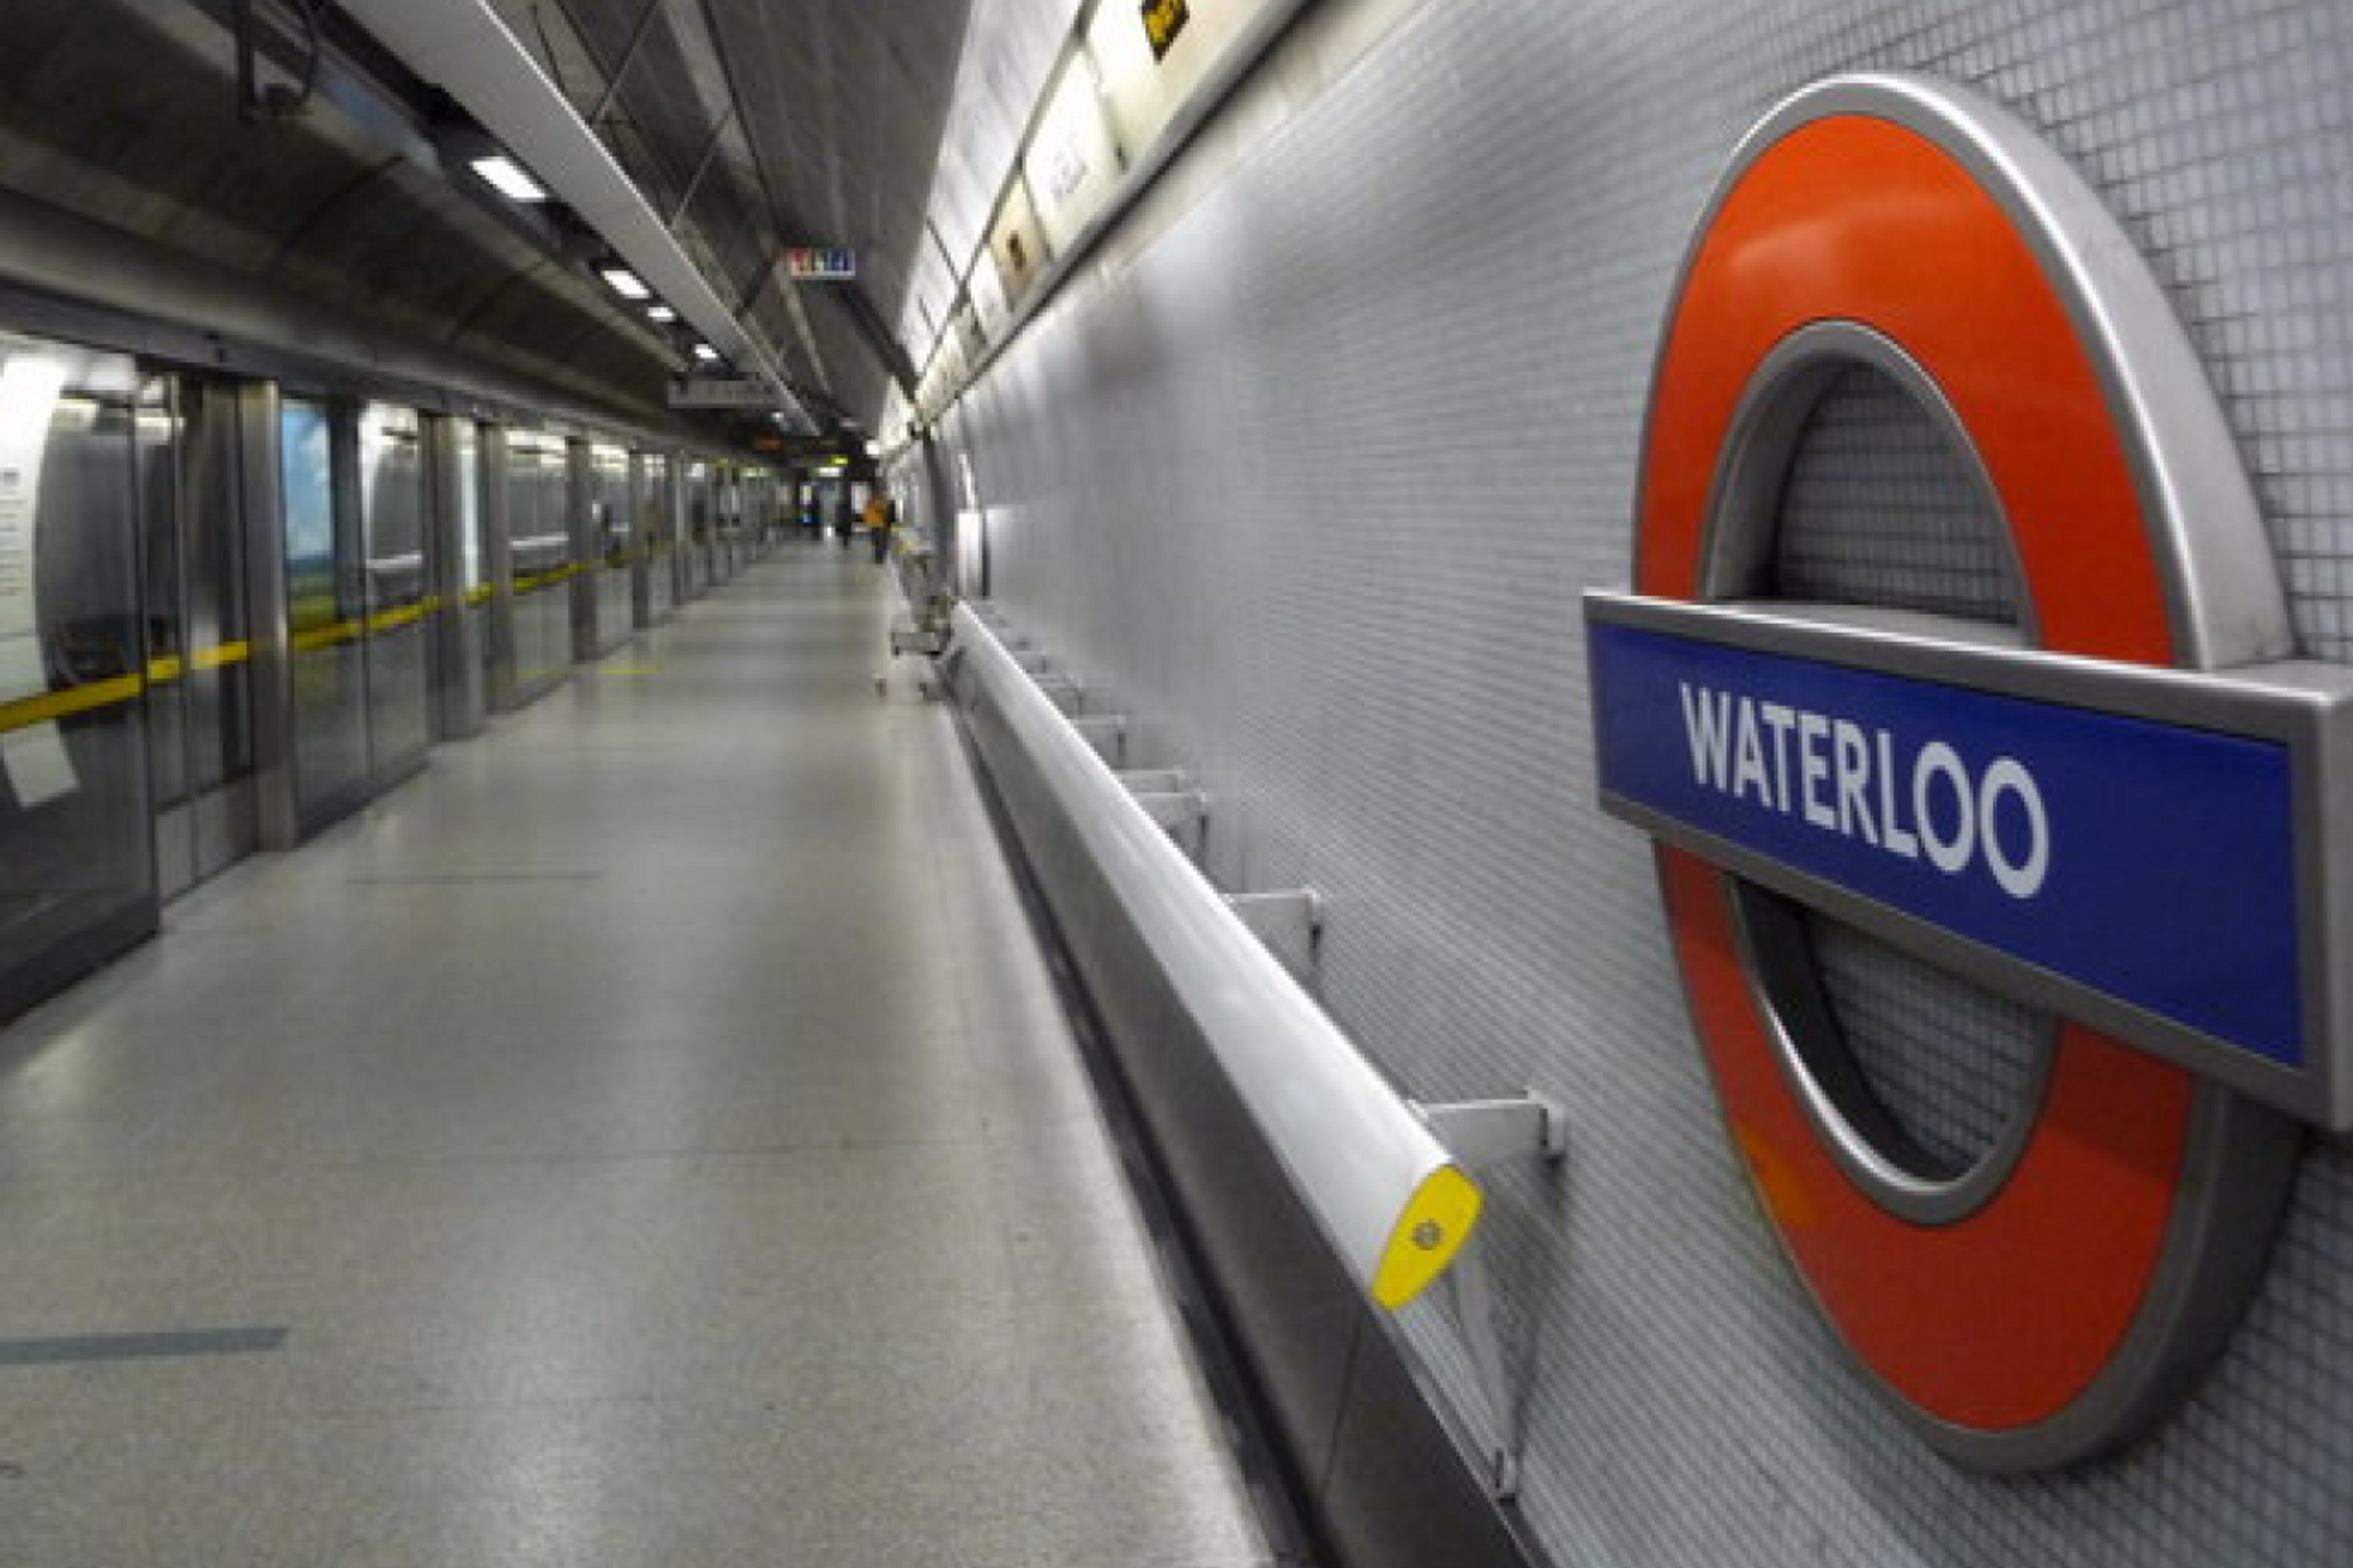 Waterloo Station underground